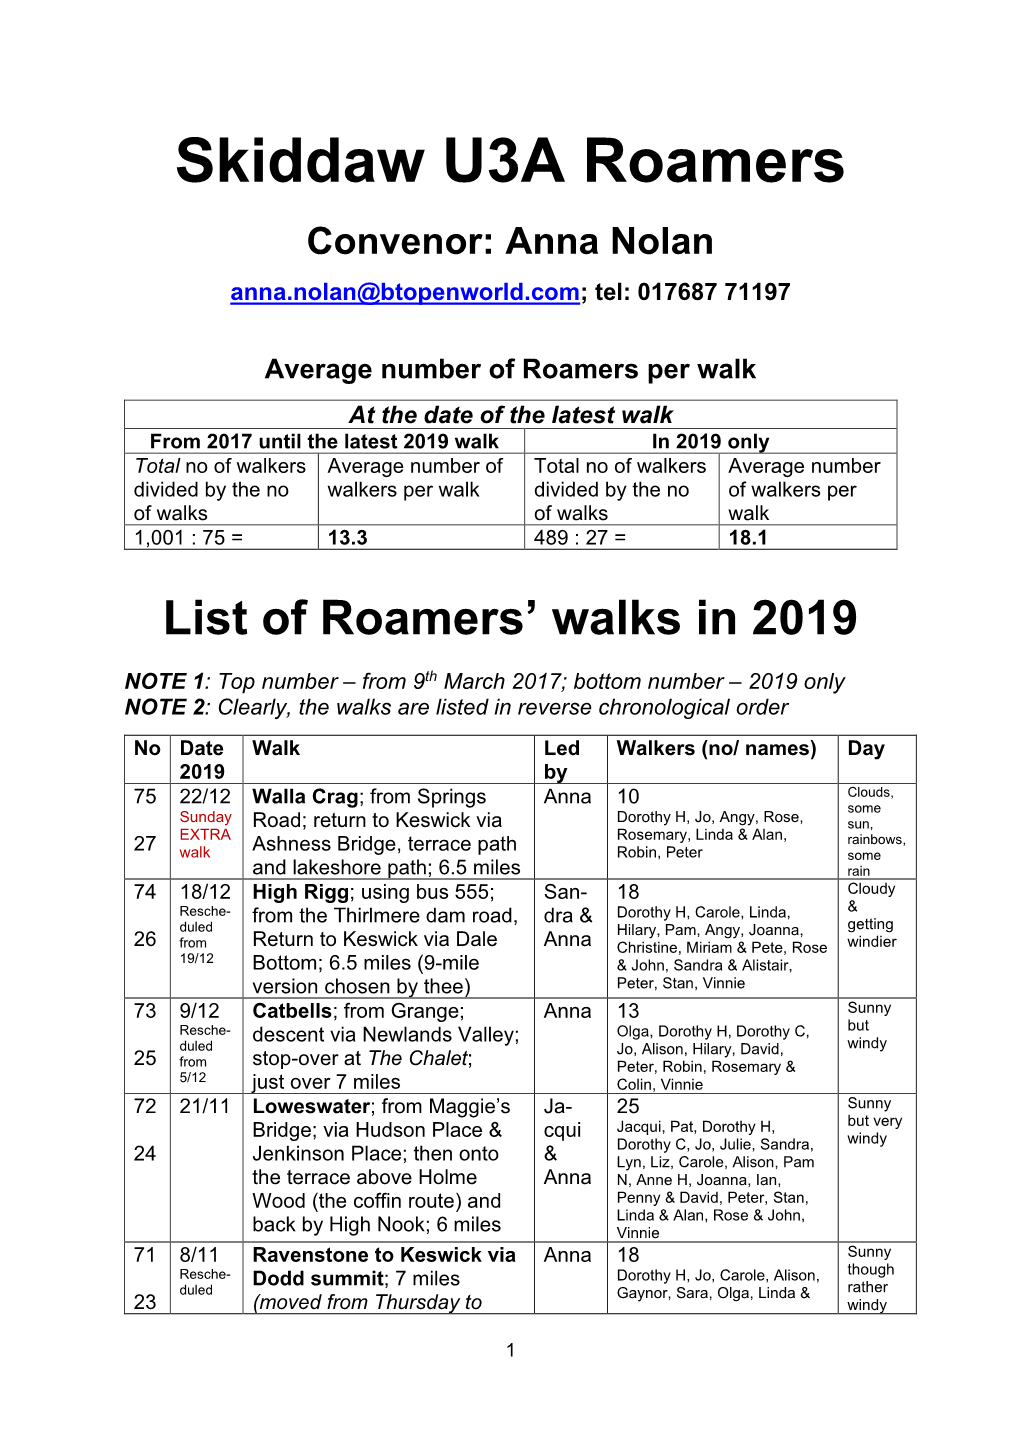 List of Roamers' Walks